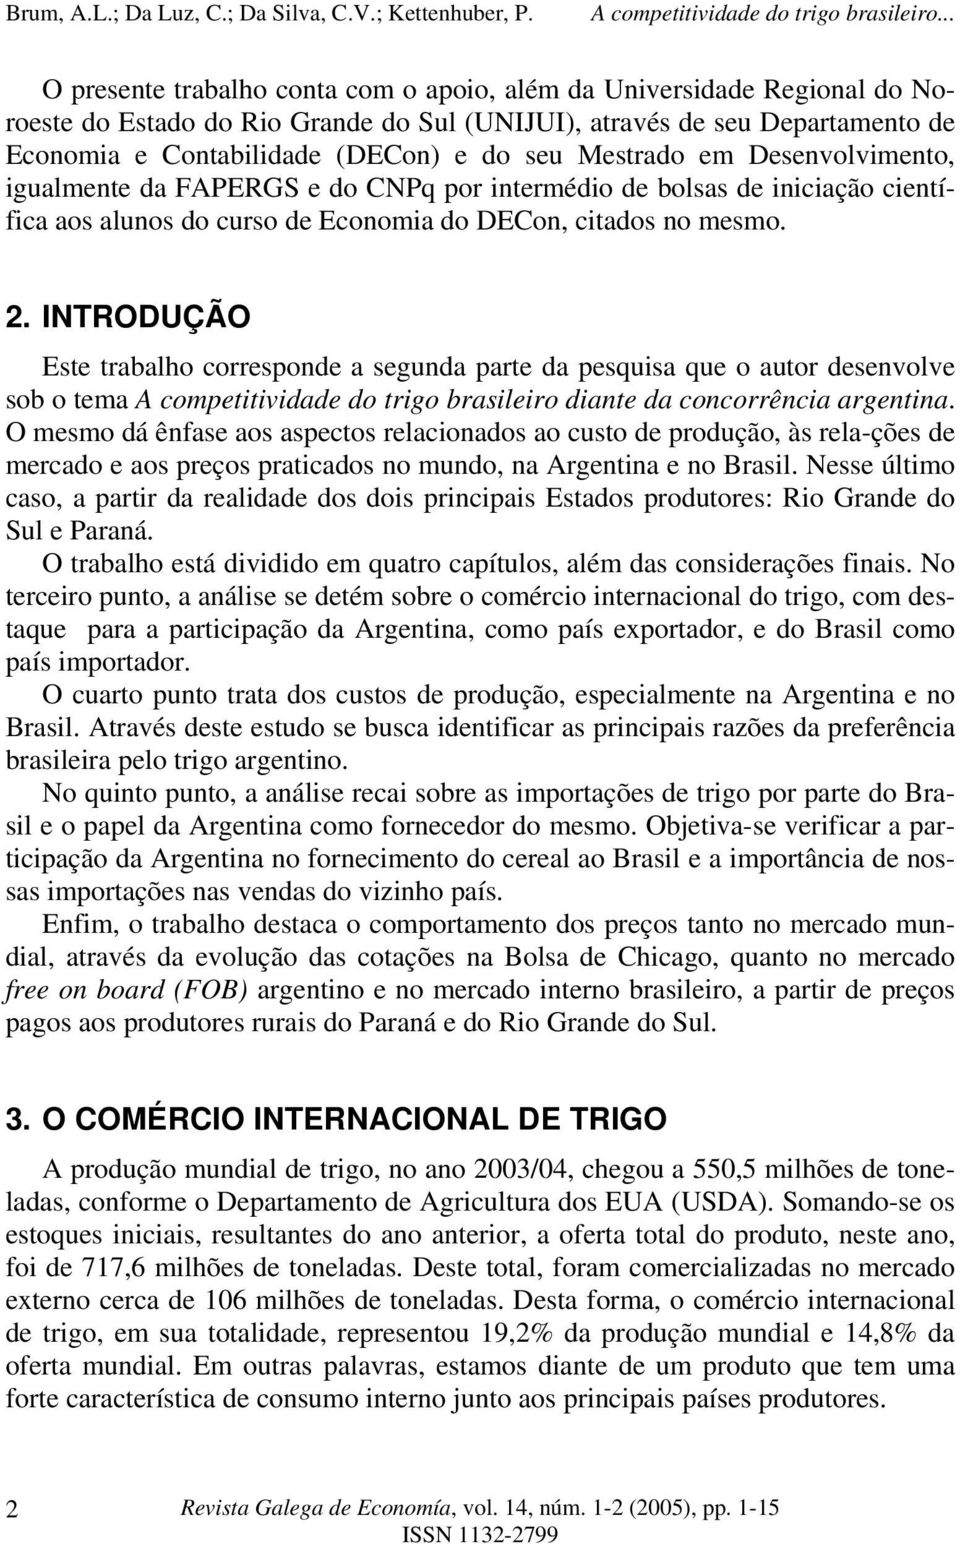 INTRODUÇÃO Este trabalho corresponde a segunda parte da pesquisa que o autor desenvolve sob o tema A competitividade do trigo brasileiro diante da concorrência argentina.